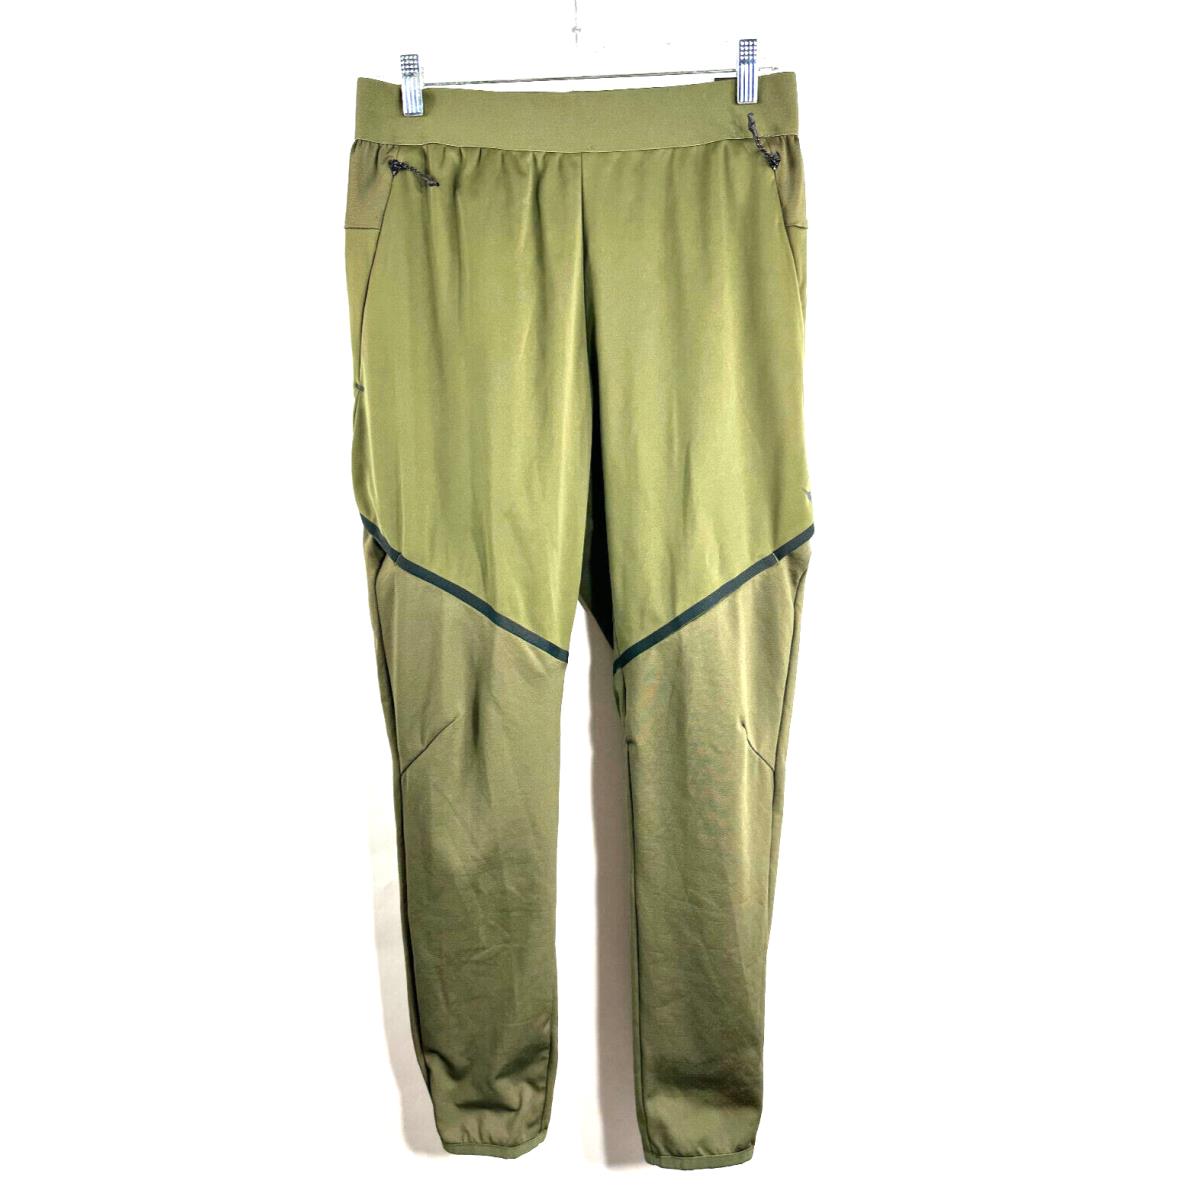 Nike Dri-fit Training Pants Olive Black Men s Size Medium 927360-395